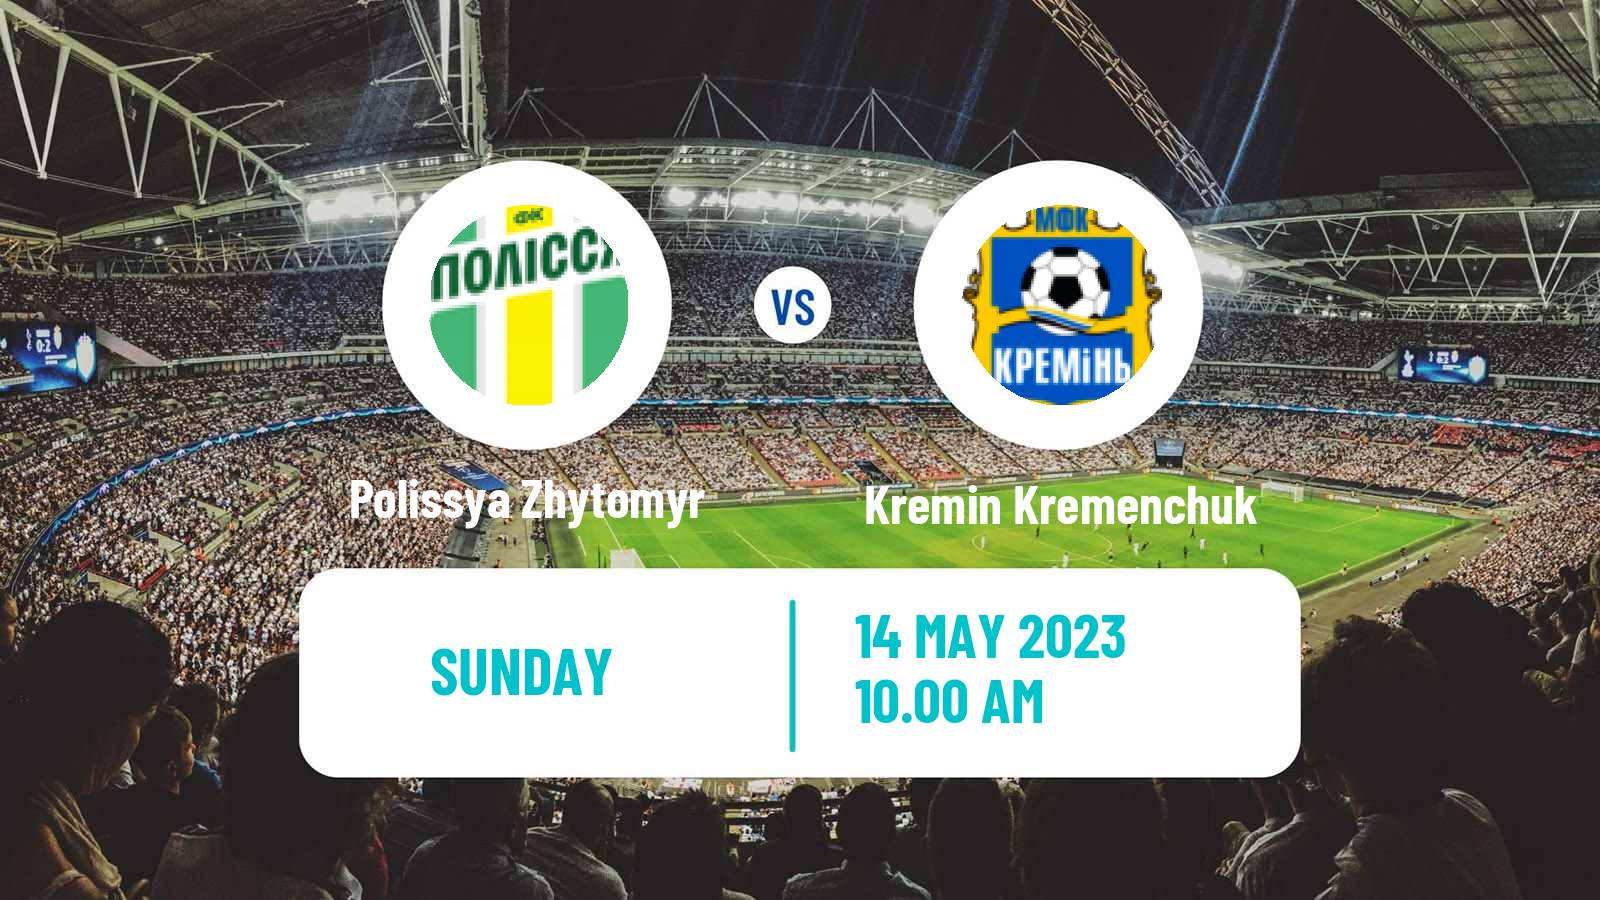 Soccer Ukrainian Persha Liga Polissya Zhytomyr - Kremin Kremenchuk